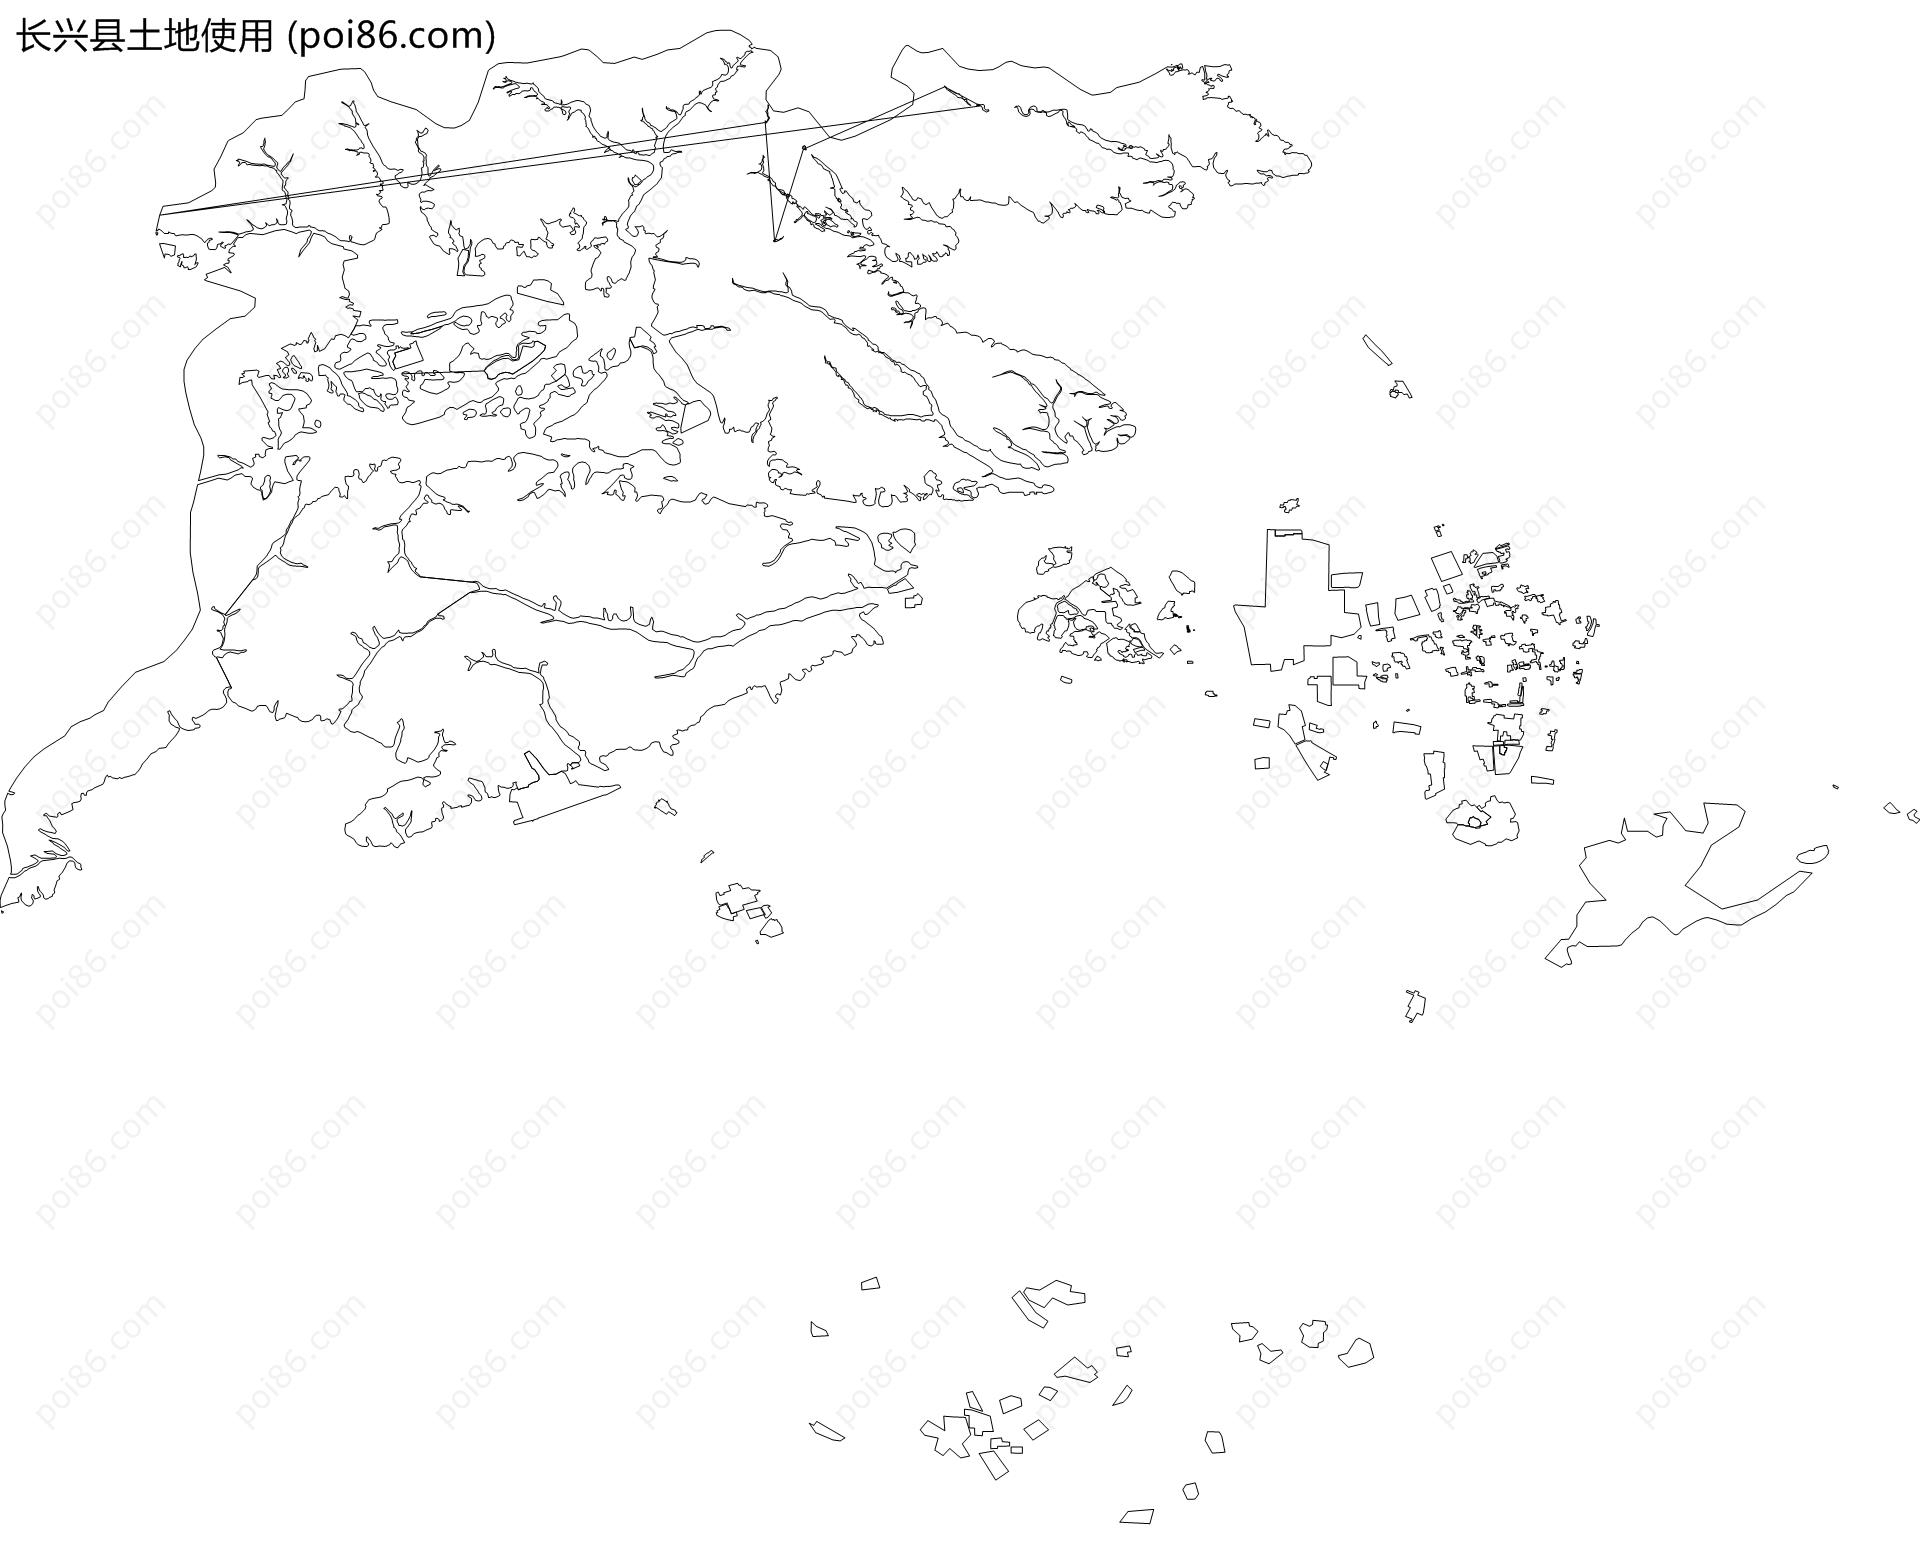 长兴县土地使用地图